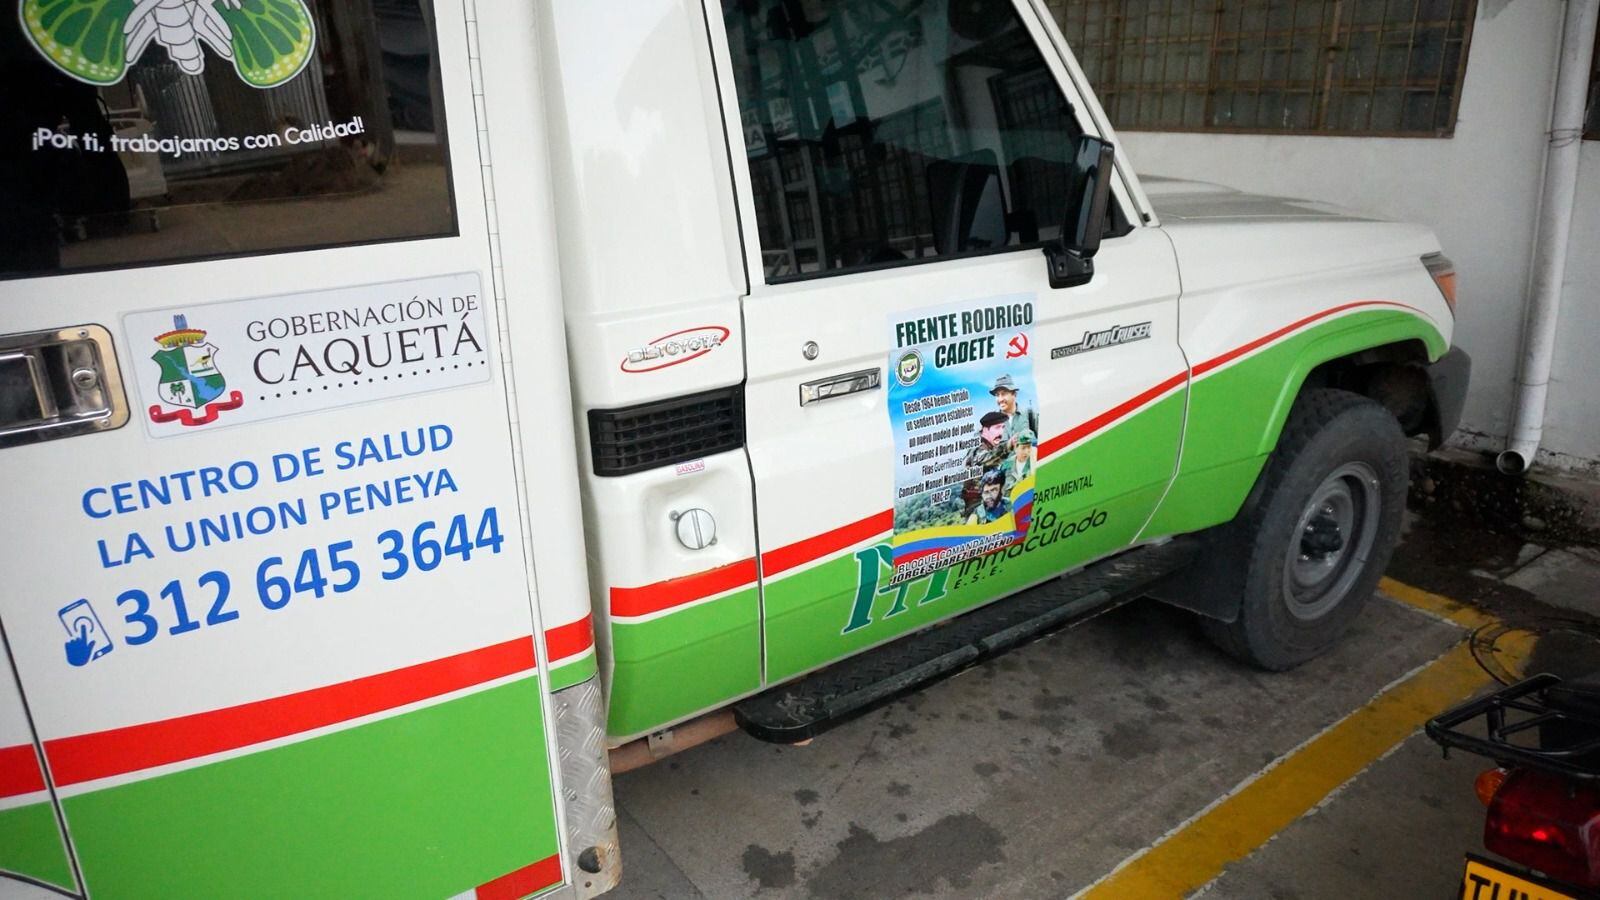 La ambulancia que fue detenida por hombres armados en Caquetá (Colombia), con el panfleto pegado en la puerta delantera.